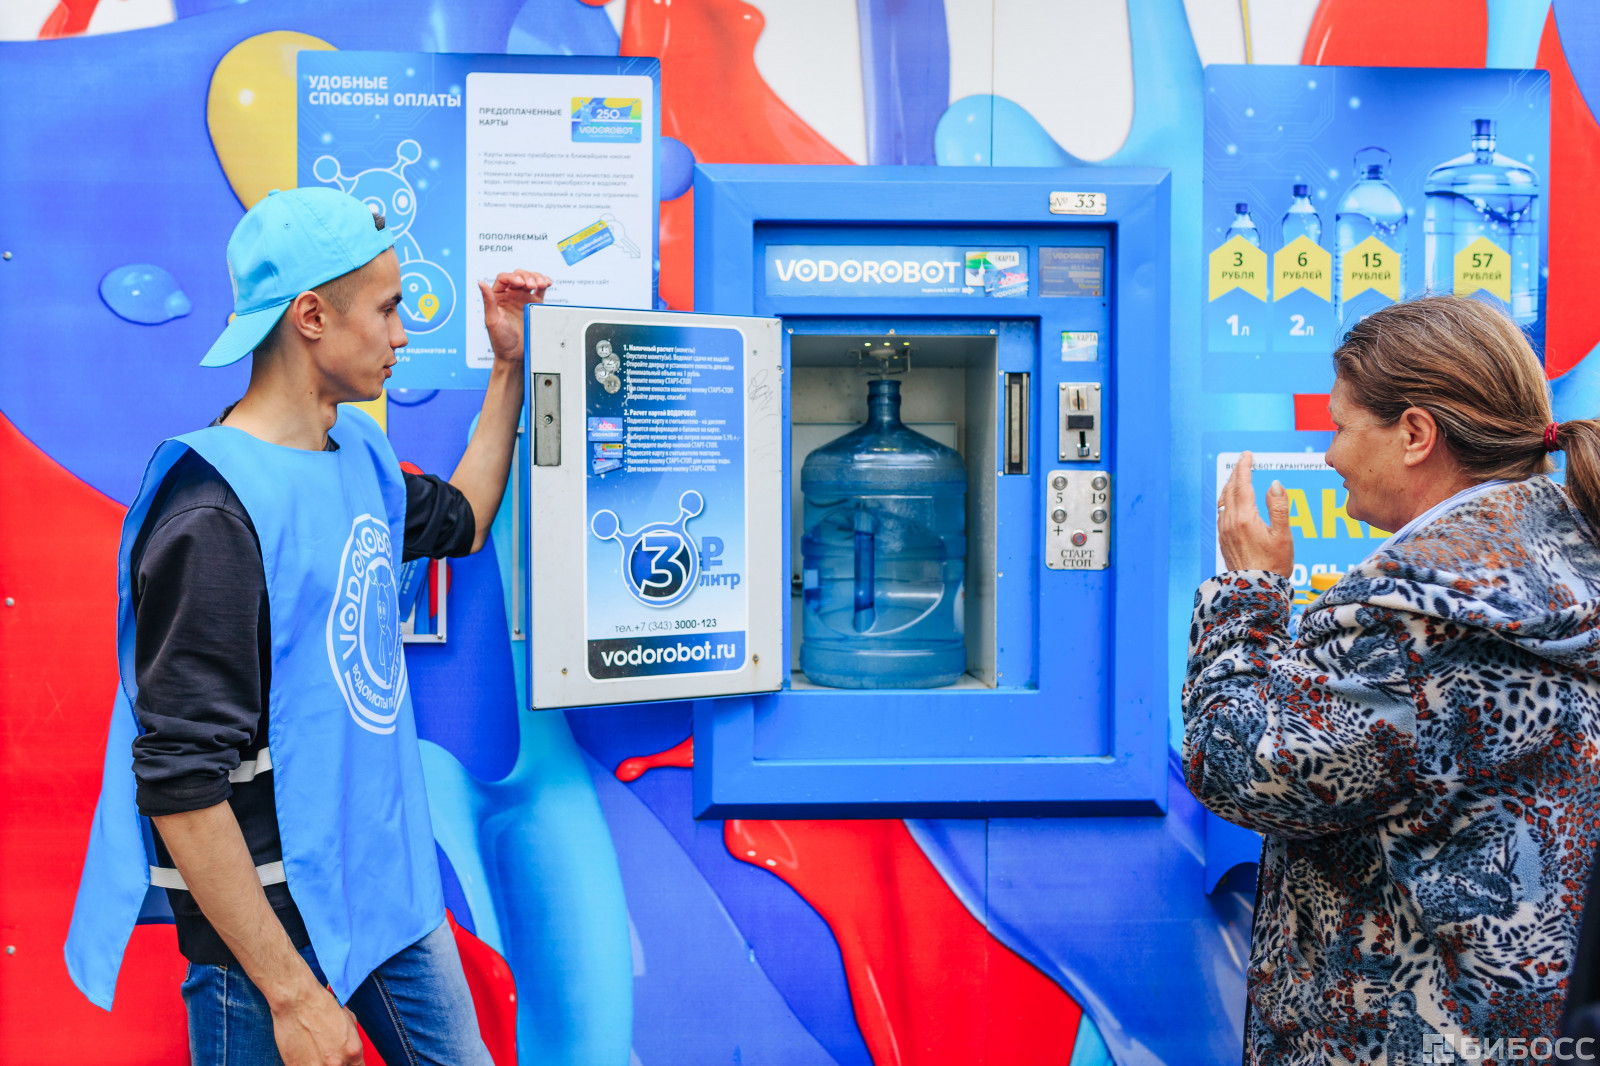 Пункты продажи воды. Автомат питьевой воды. Водоробот автомат. Автомат с водой. Автомат по продаже воды.